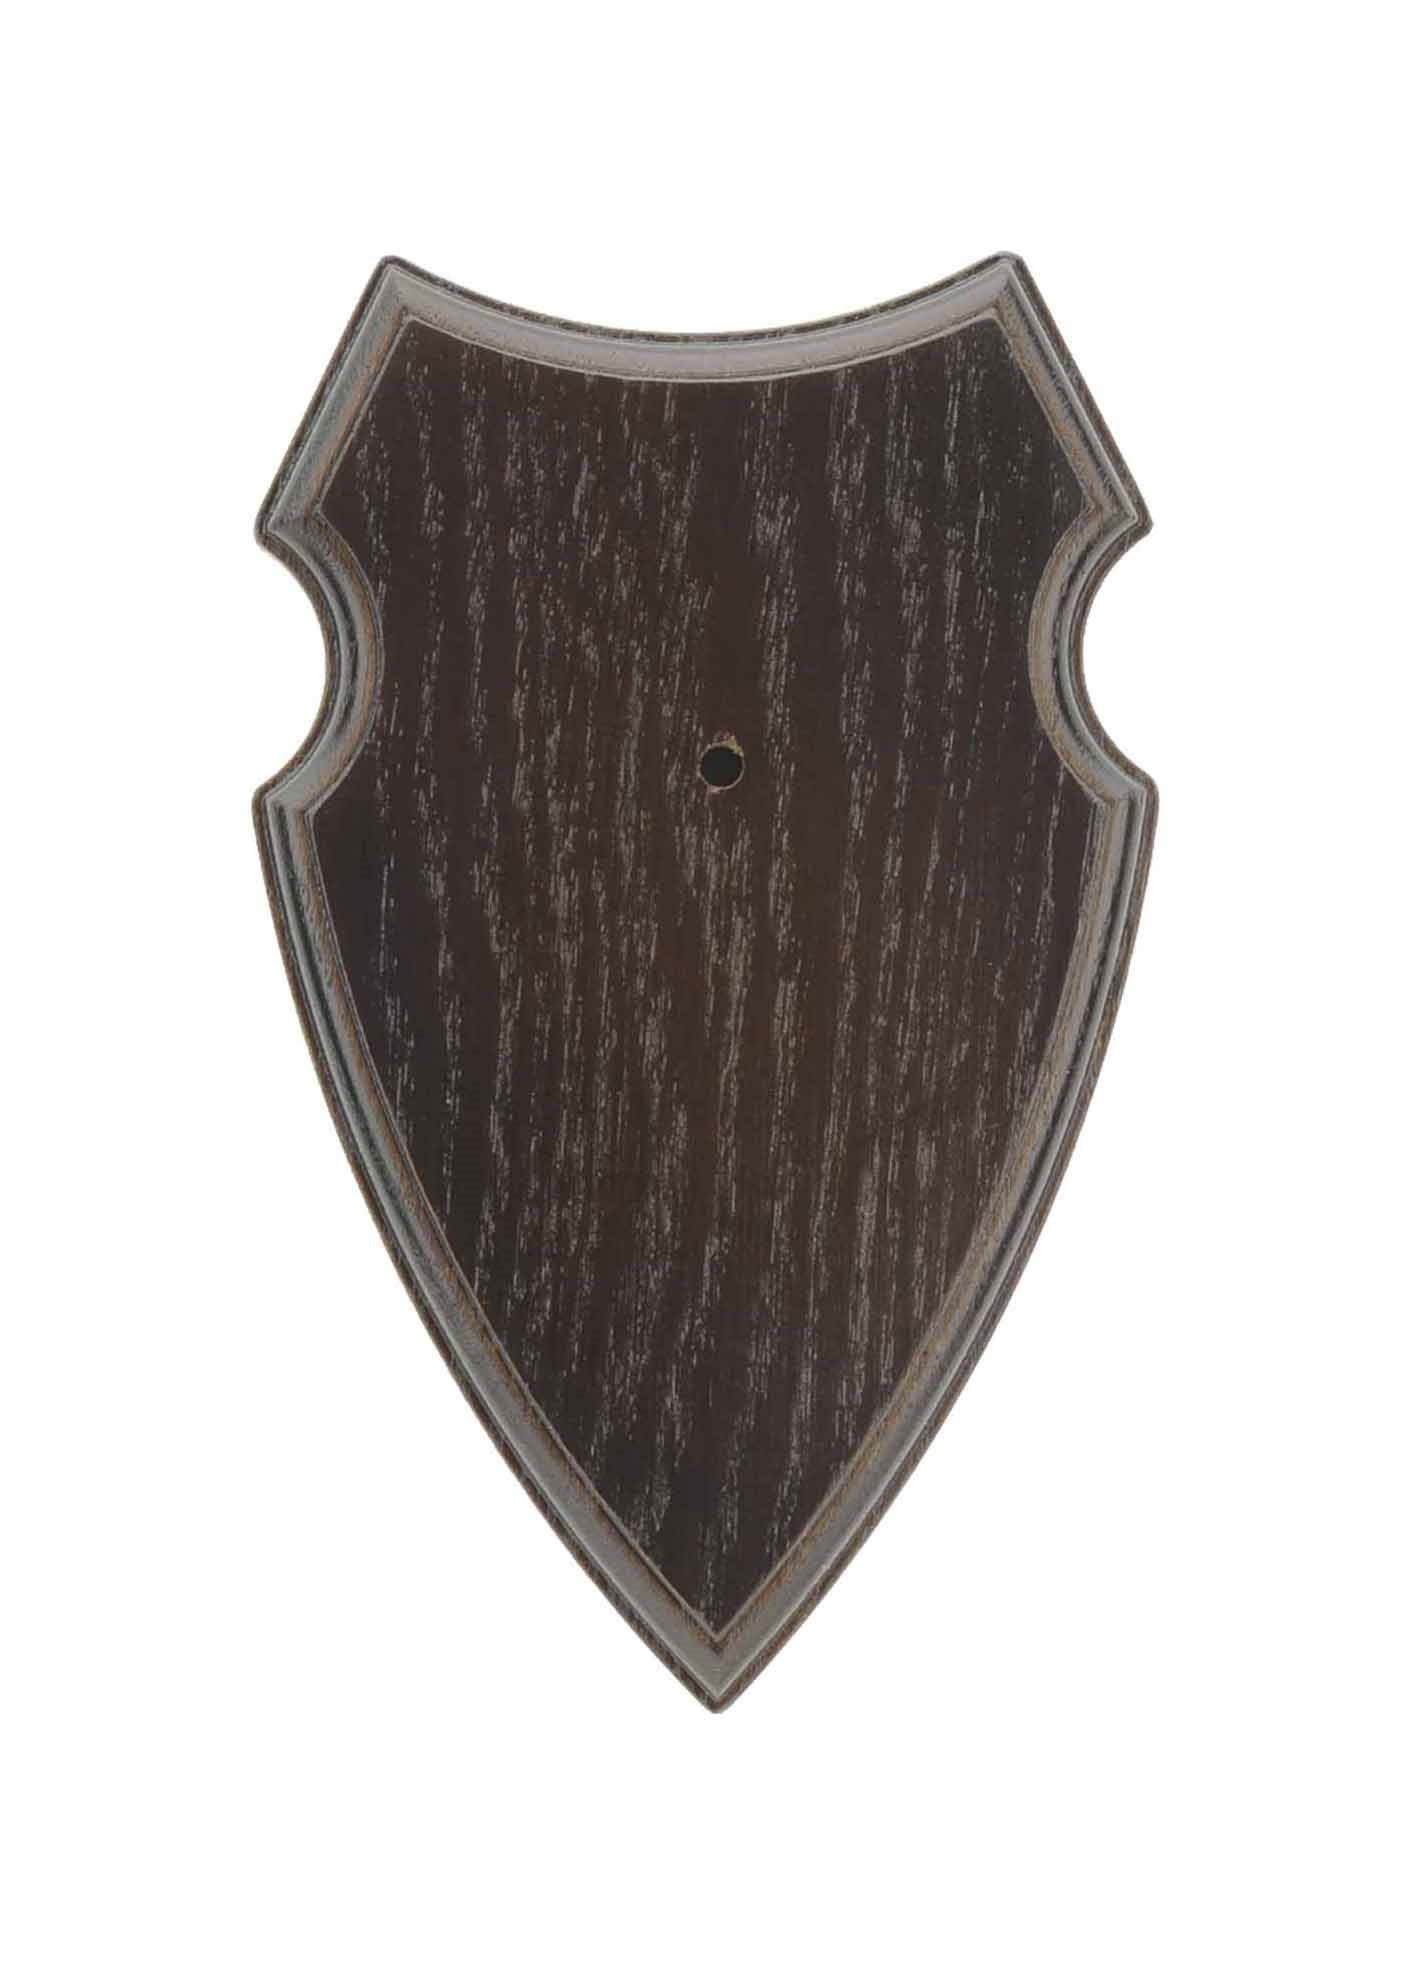 Dubová podložka pod trofej Oak 3 19x12 cm - tmavá  